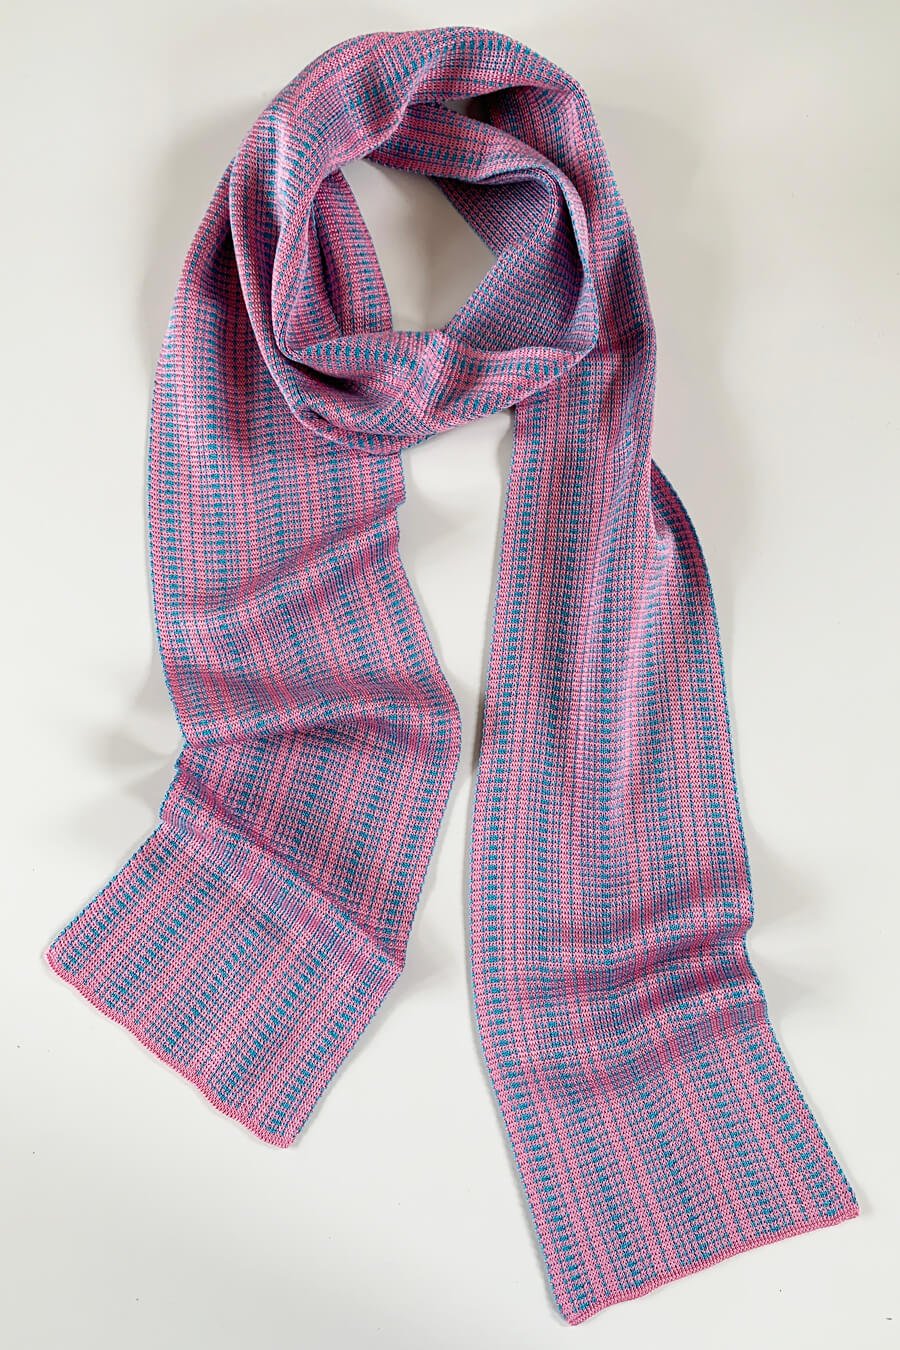 Designer Silk Scarves, Made in Scotland — Collingwood-Norris